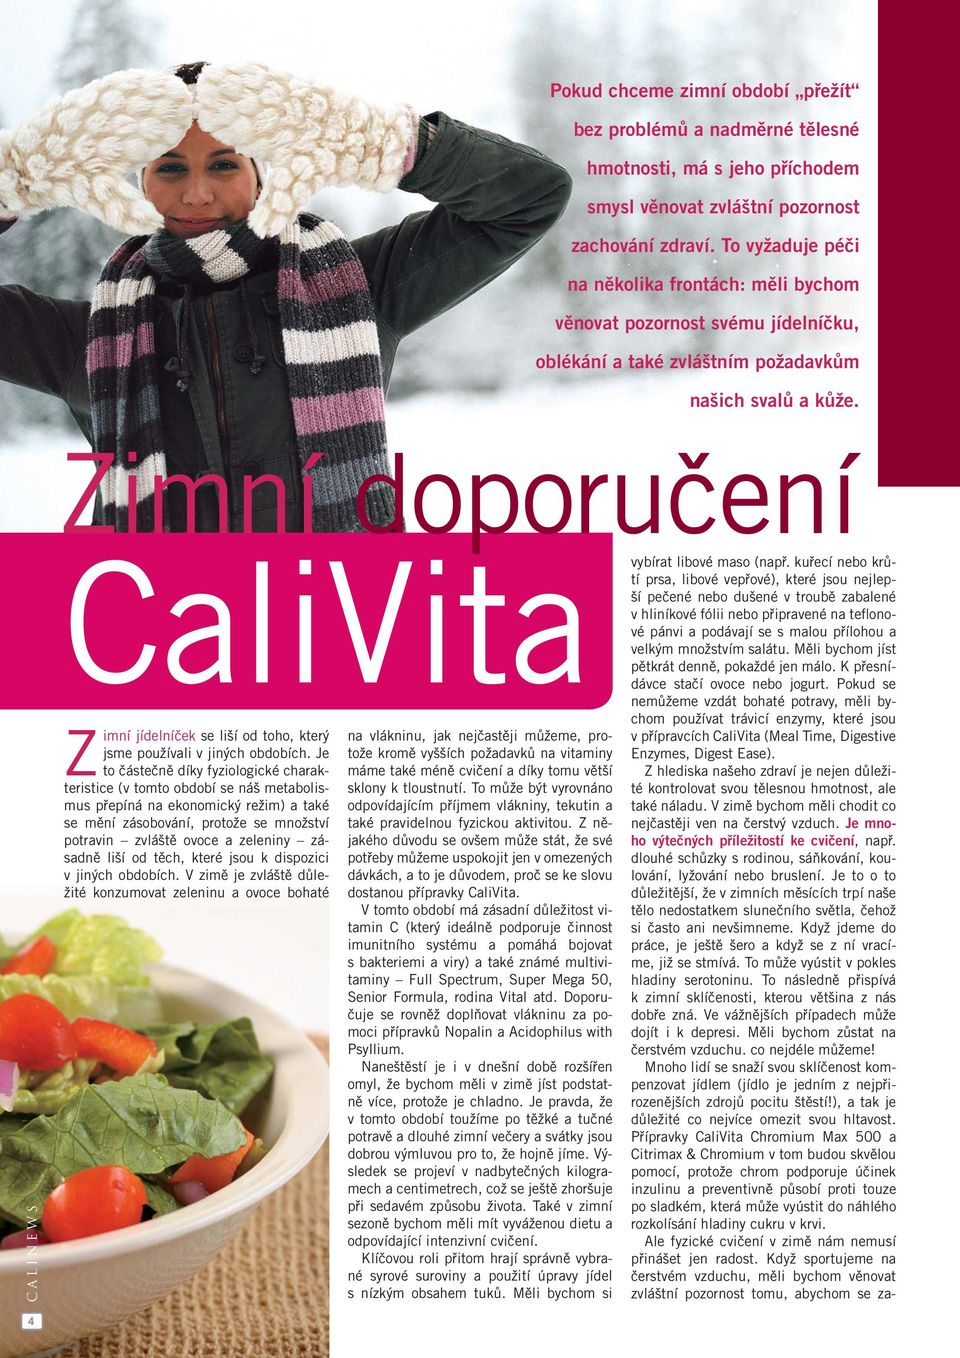 Zimní doporučení 4 CaliVita Z imní jídelníček se liší od toho, který jsme používali v jiných obdobích.